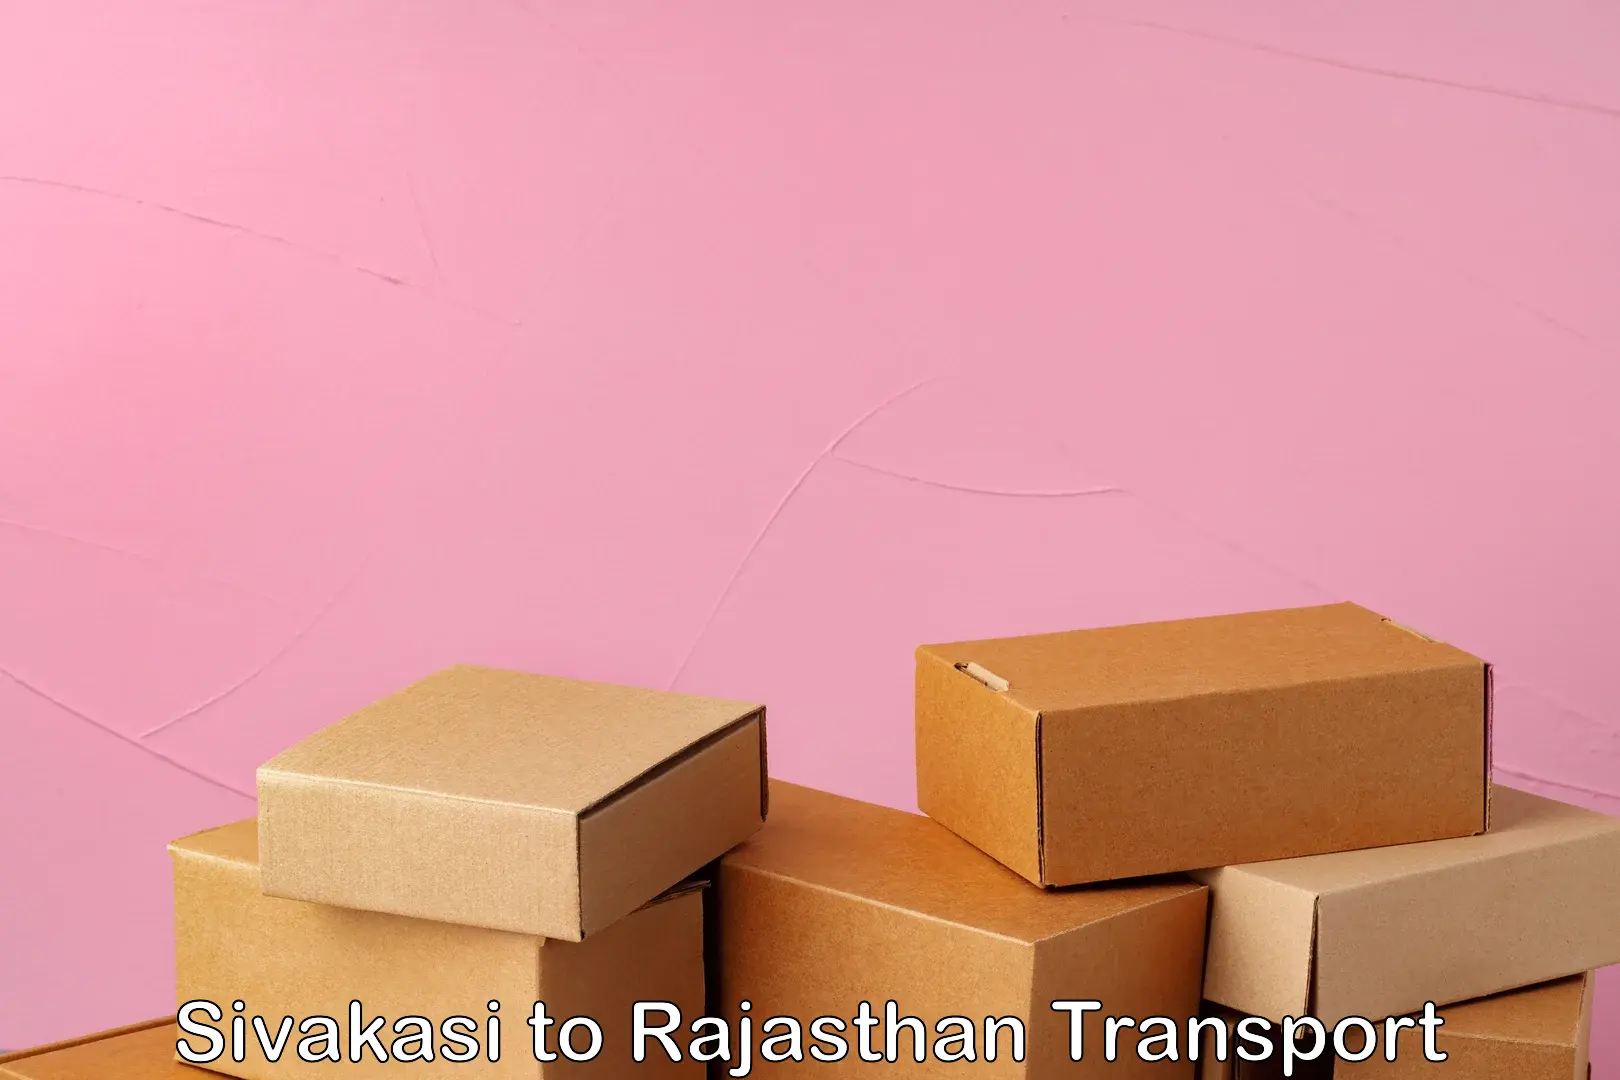 Daily transport service Sivakasi to Rajasthan